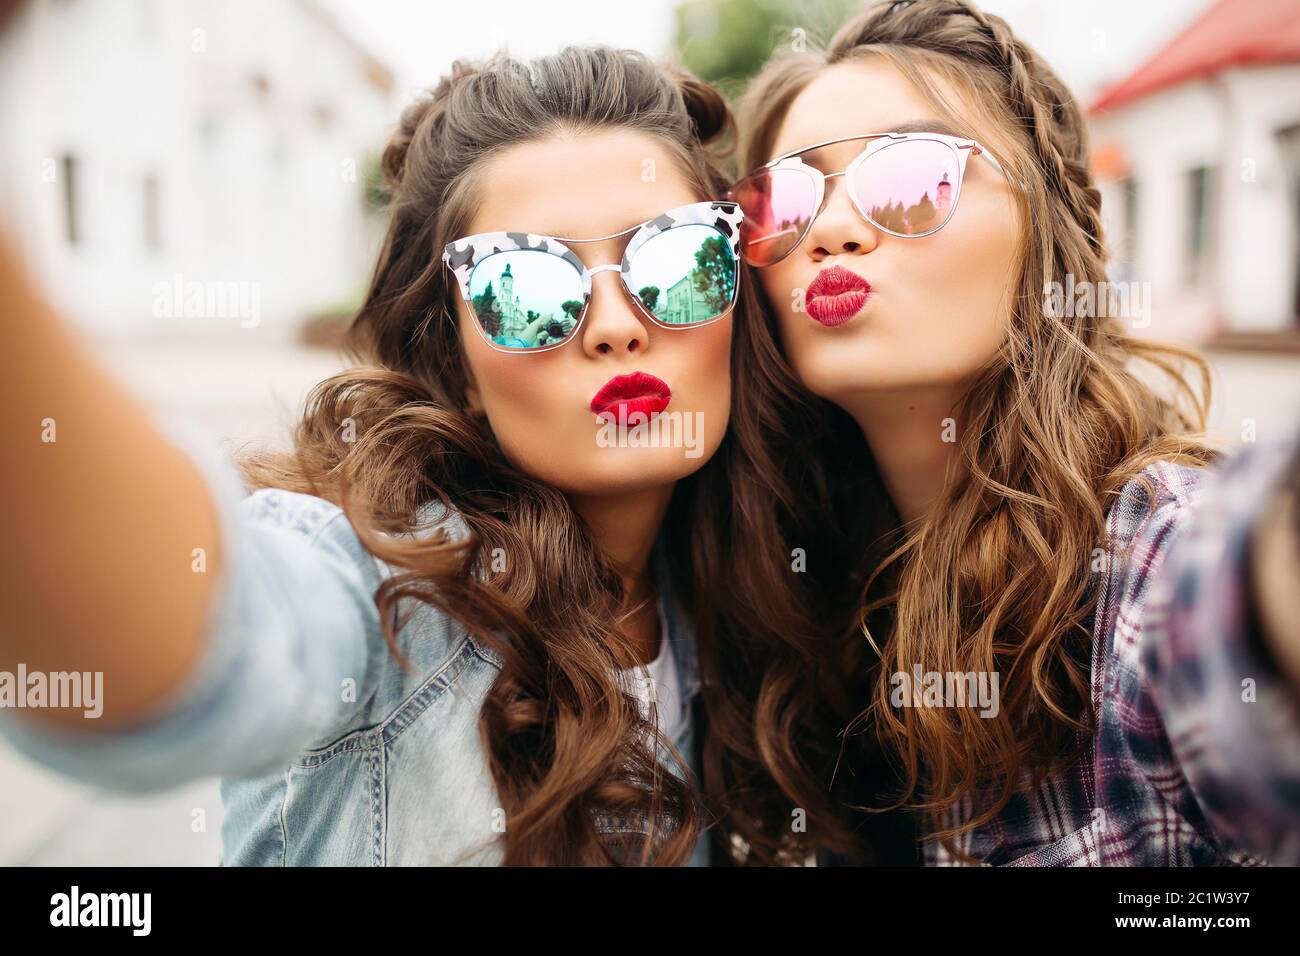 Wunderschöne brünette Freundinnen mit Frisur, verspiegelten Sonnenbrillen und roten Lippen, selfie mit Ente Gesicht. Stockfoto